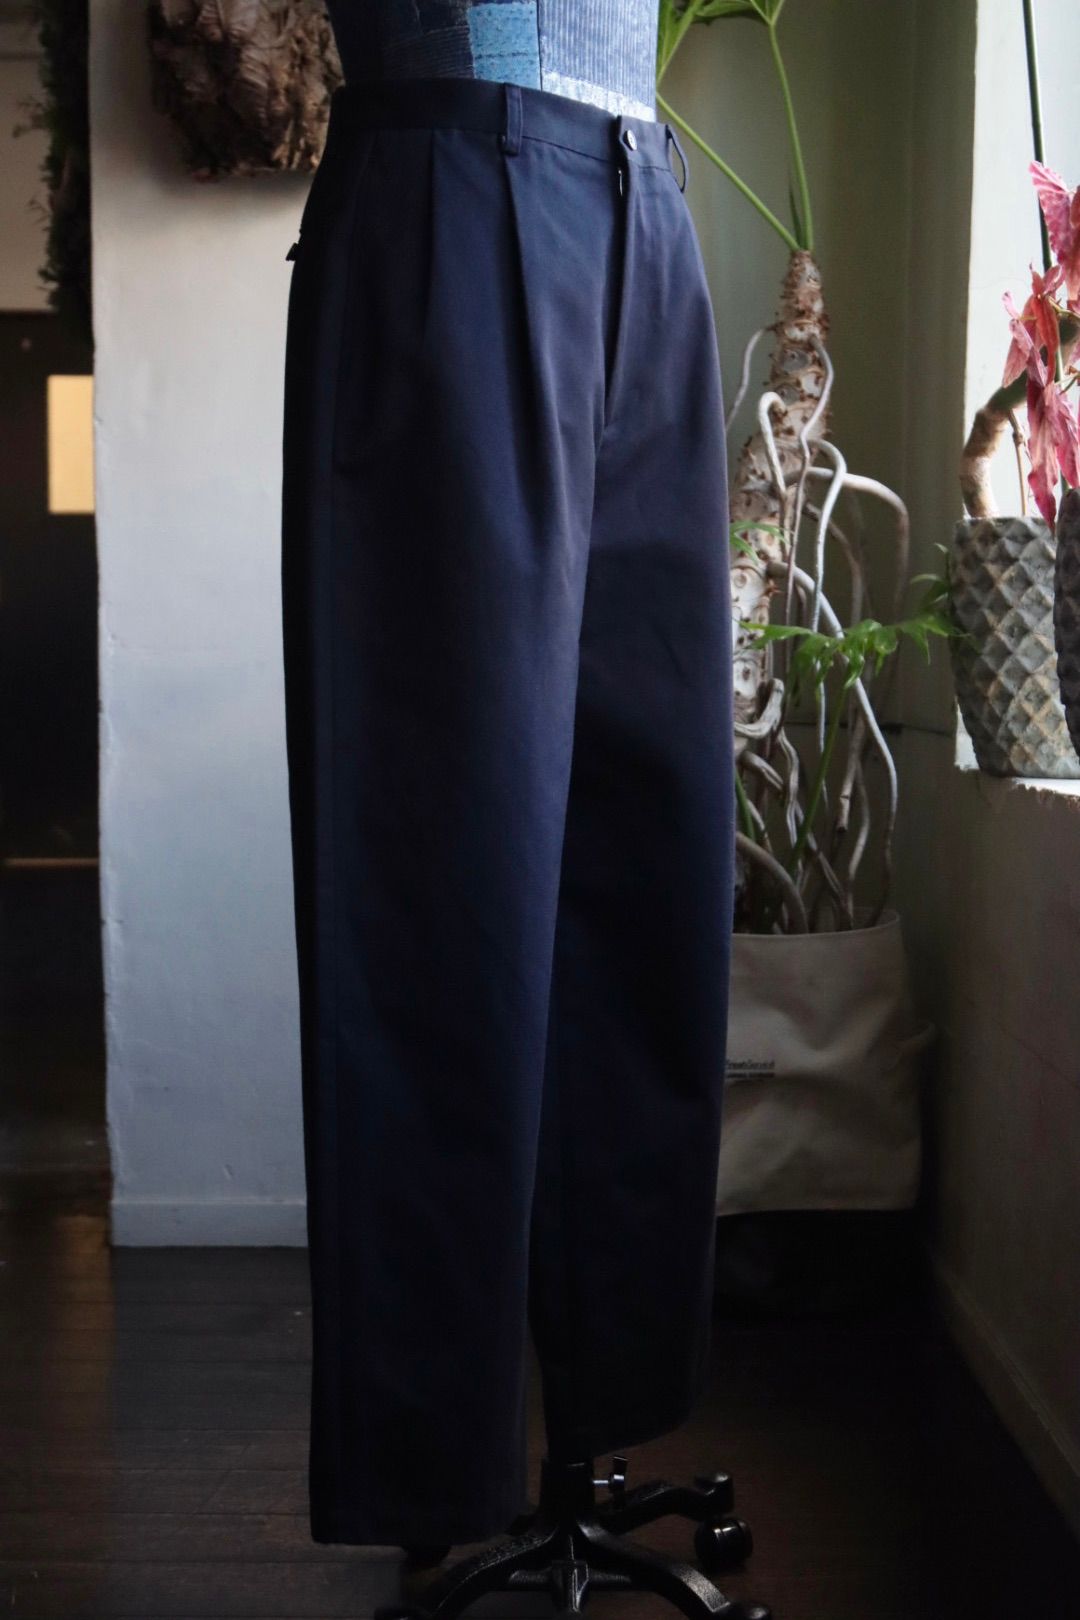 アプレッセ24SS Type.1 Silk Blend Chino Trousers (24SAP-04-13H)NAVY - 1(S)